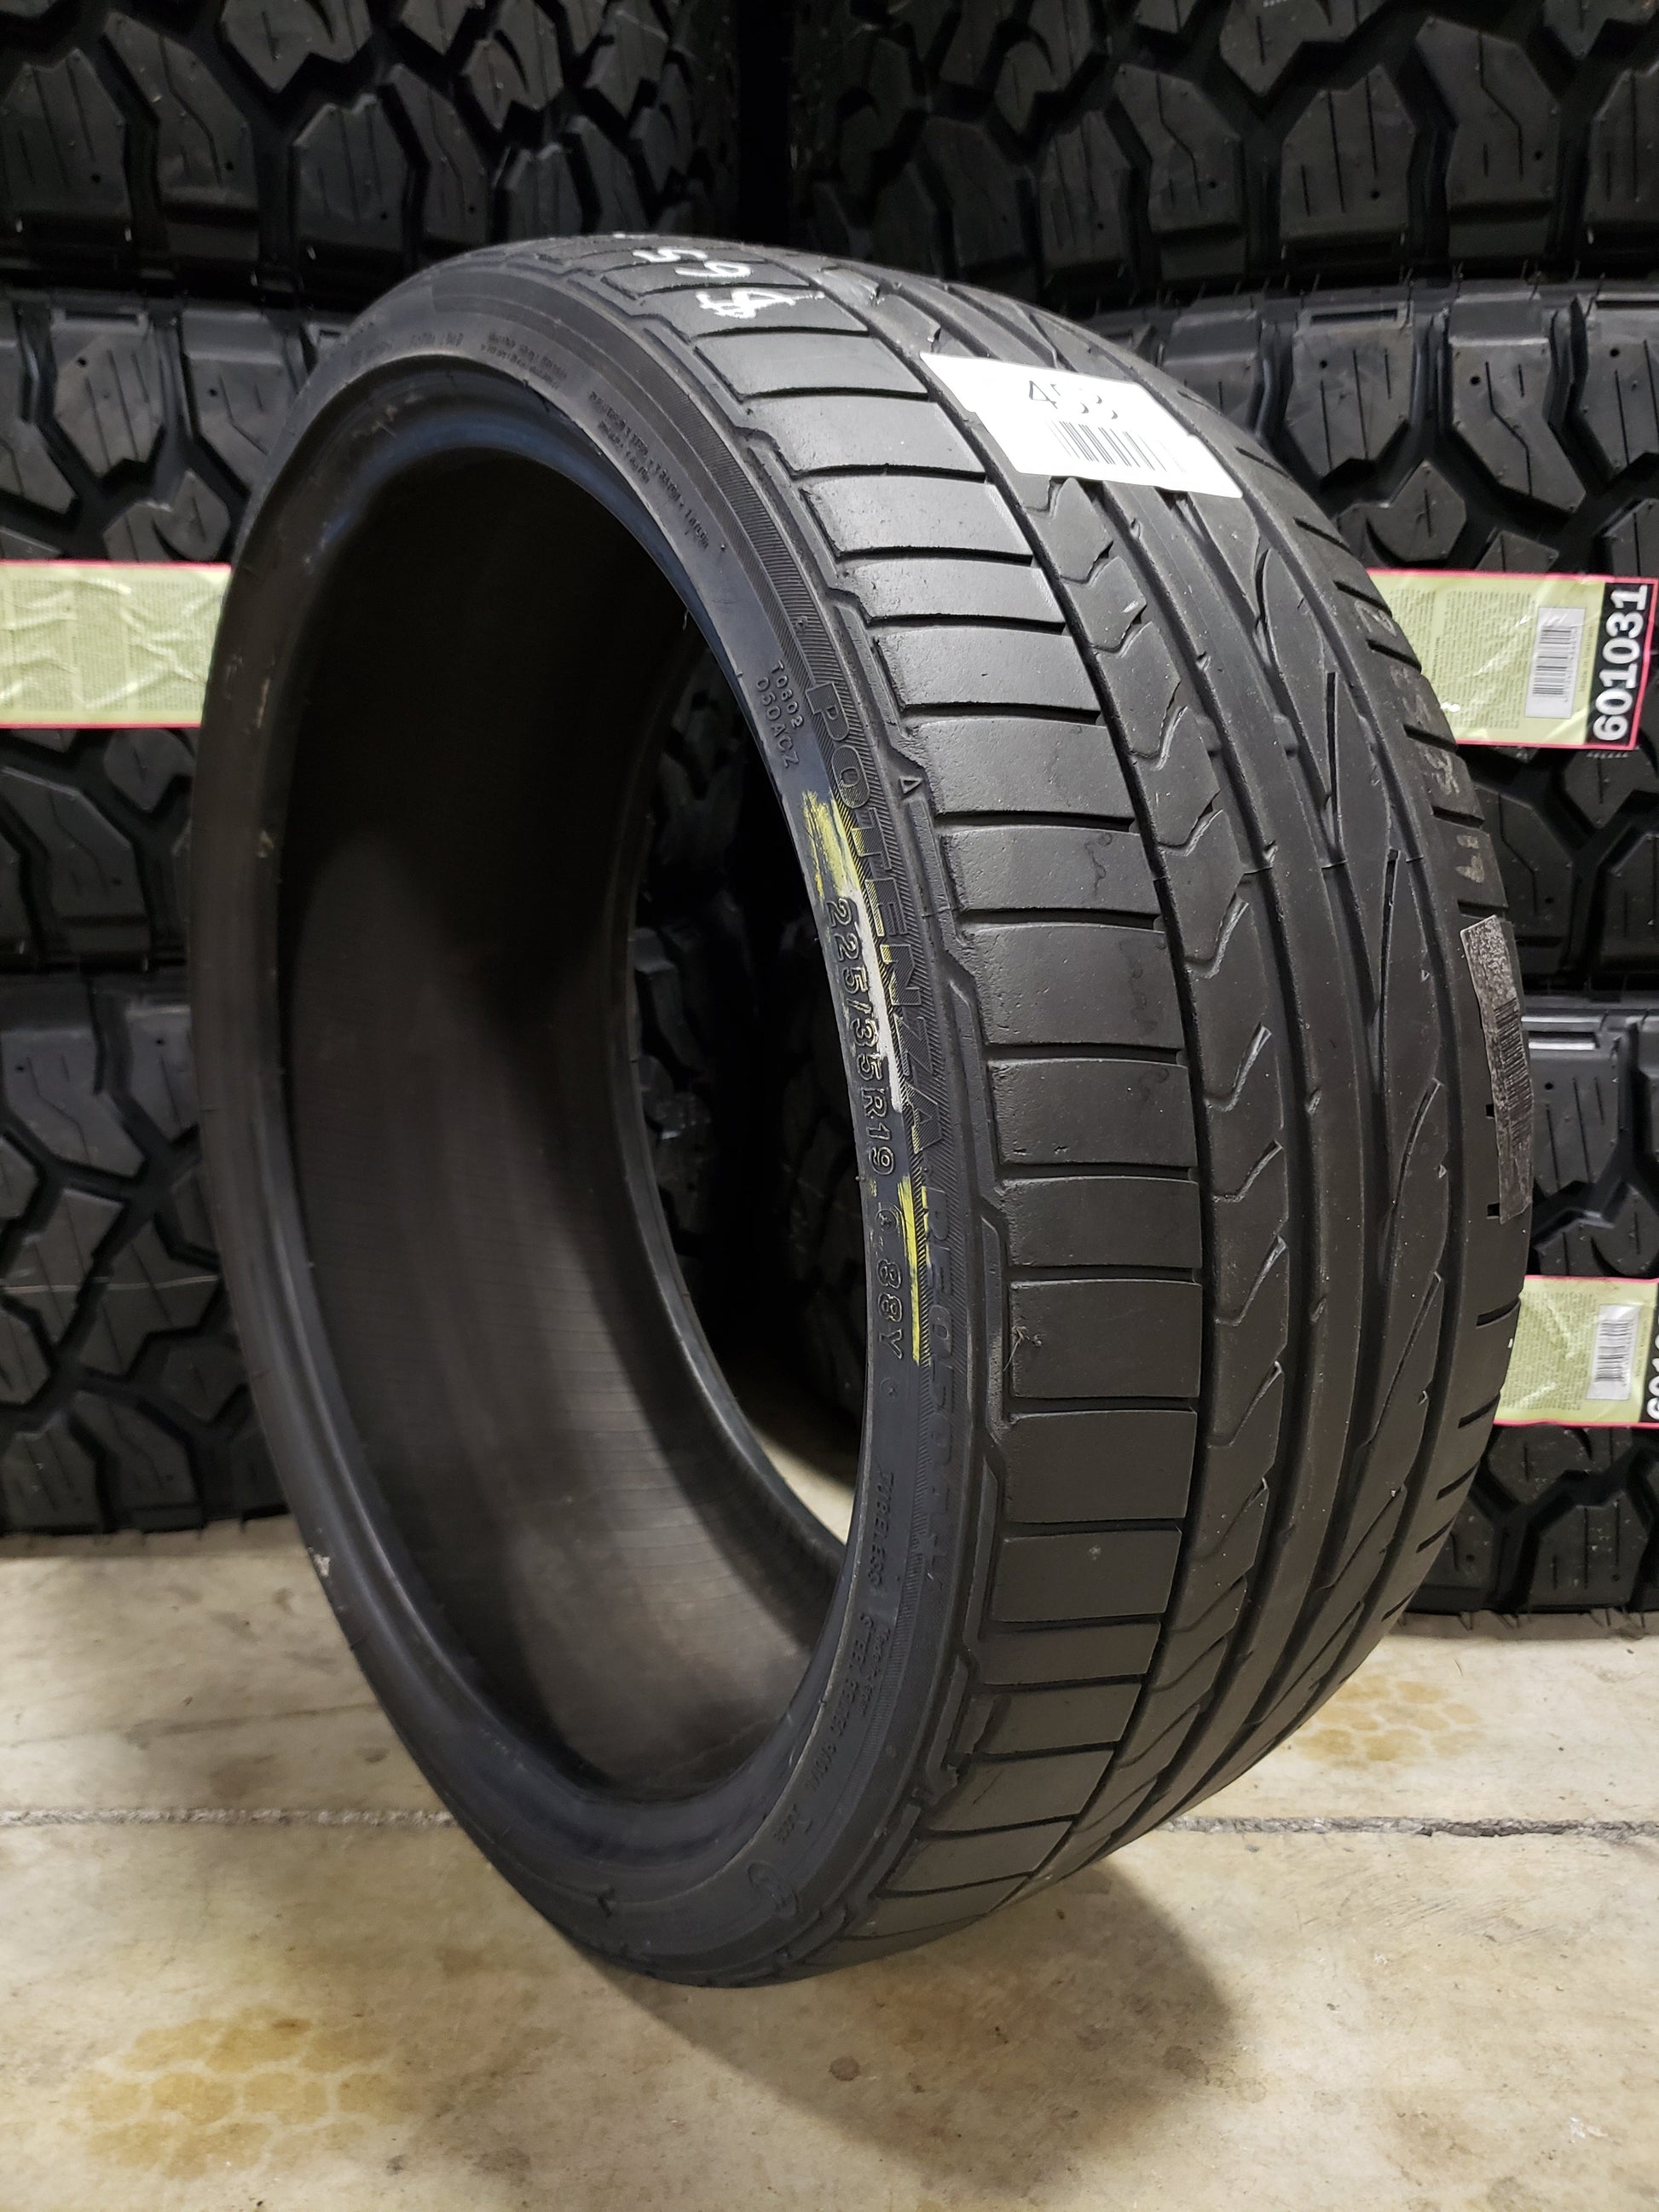 SINGLE 225/35R19 Bridgestone Potenza RE050A RFT 88 Y XL - Used Tires